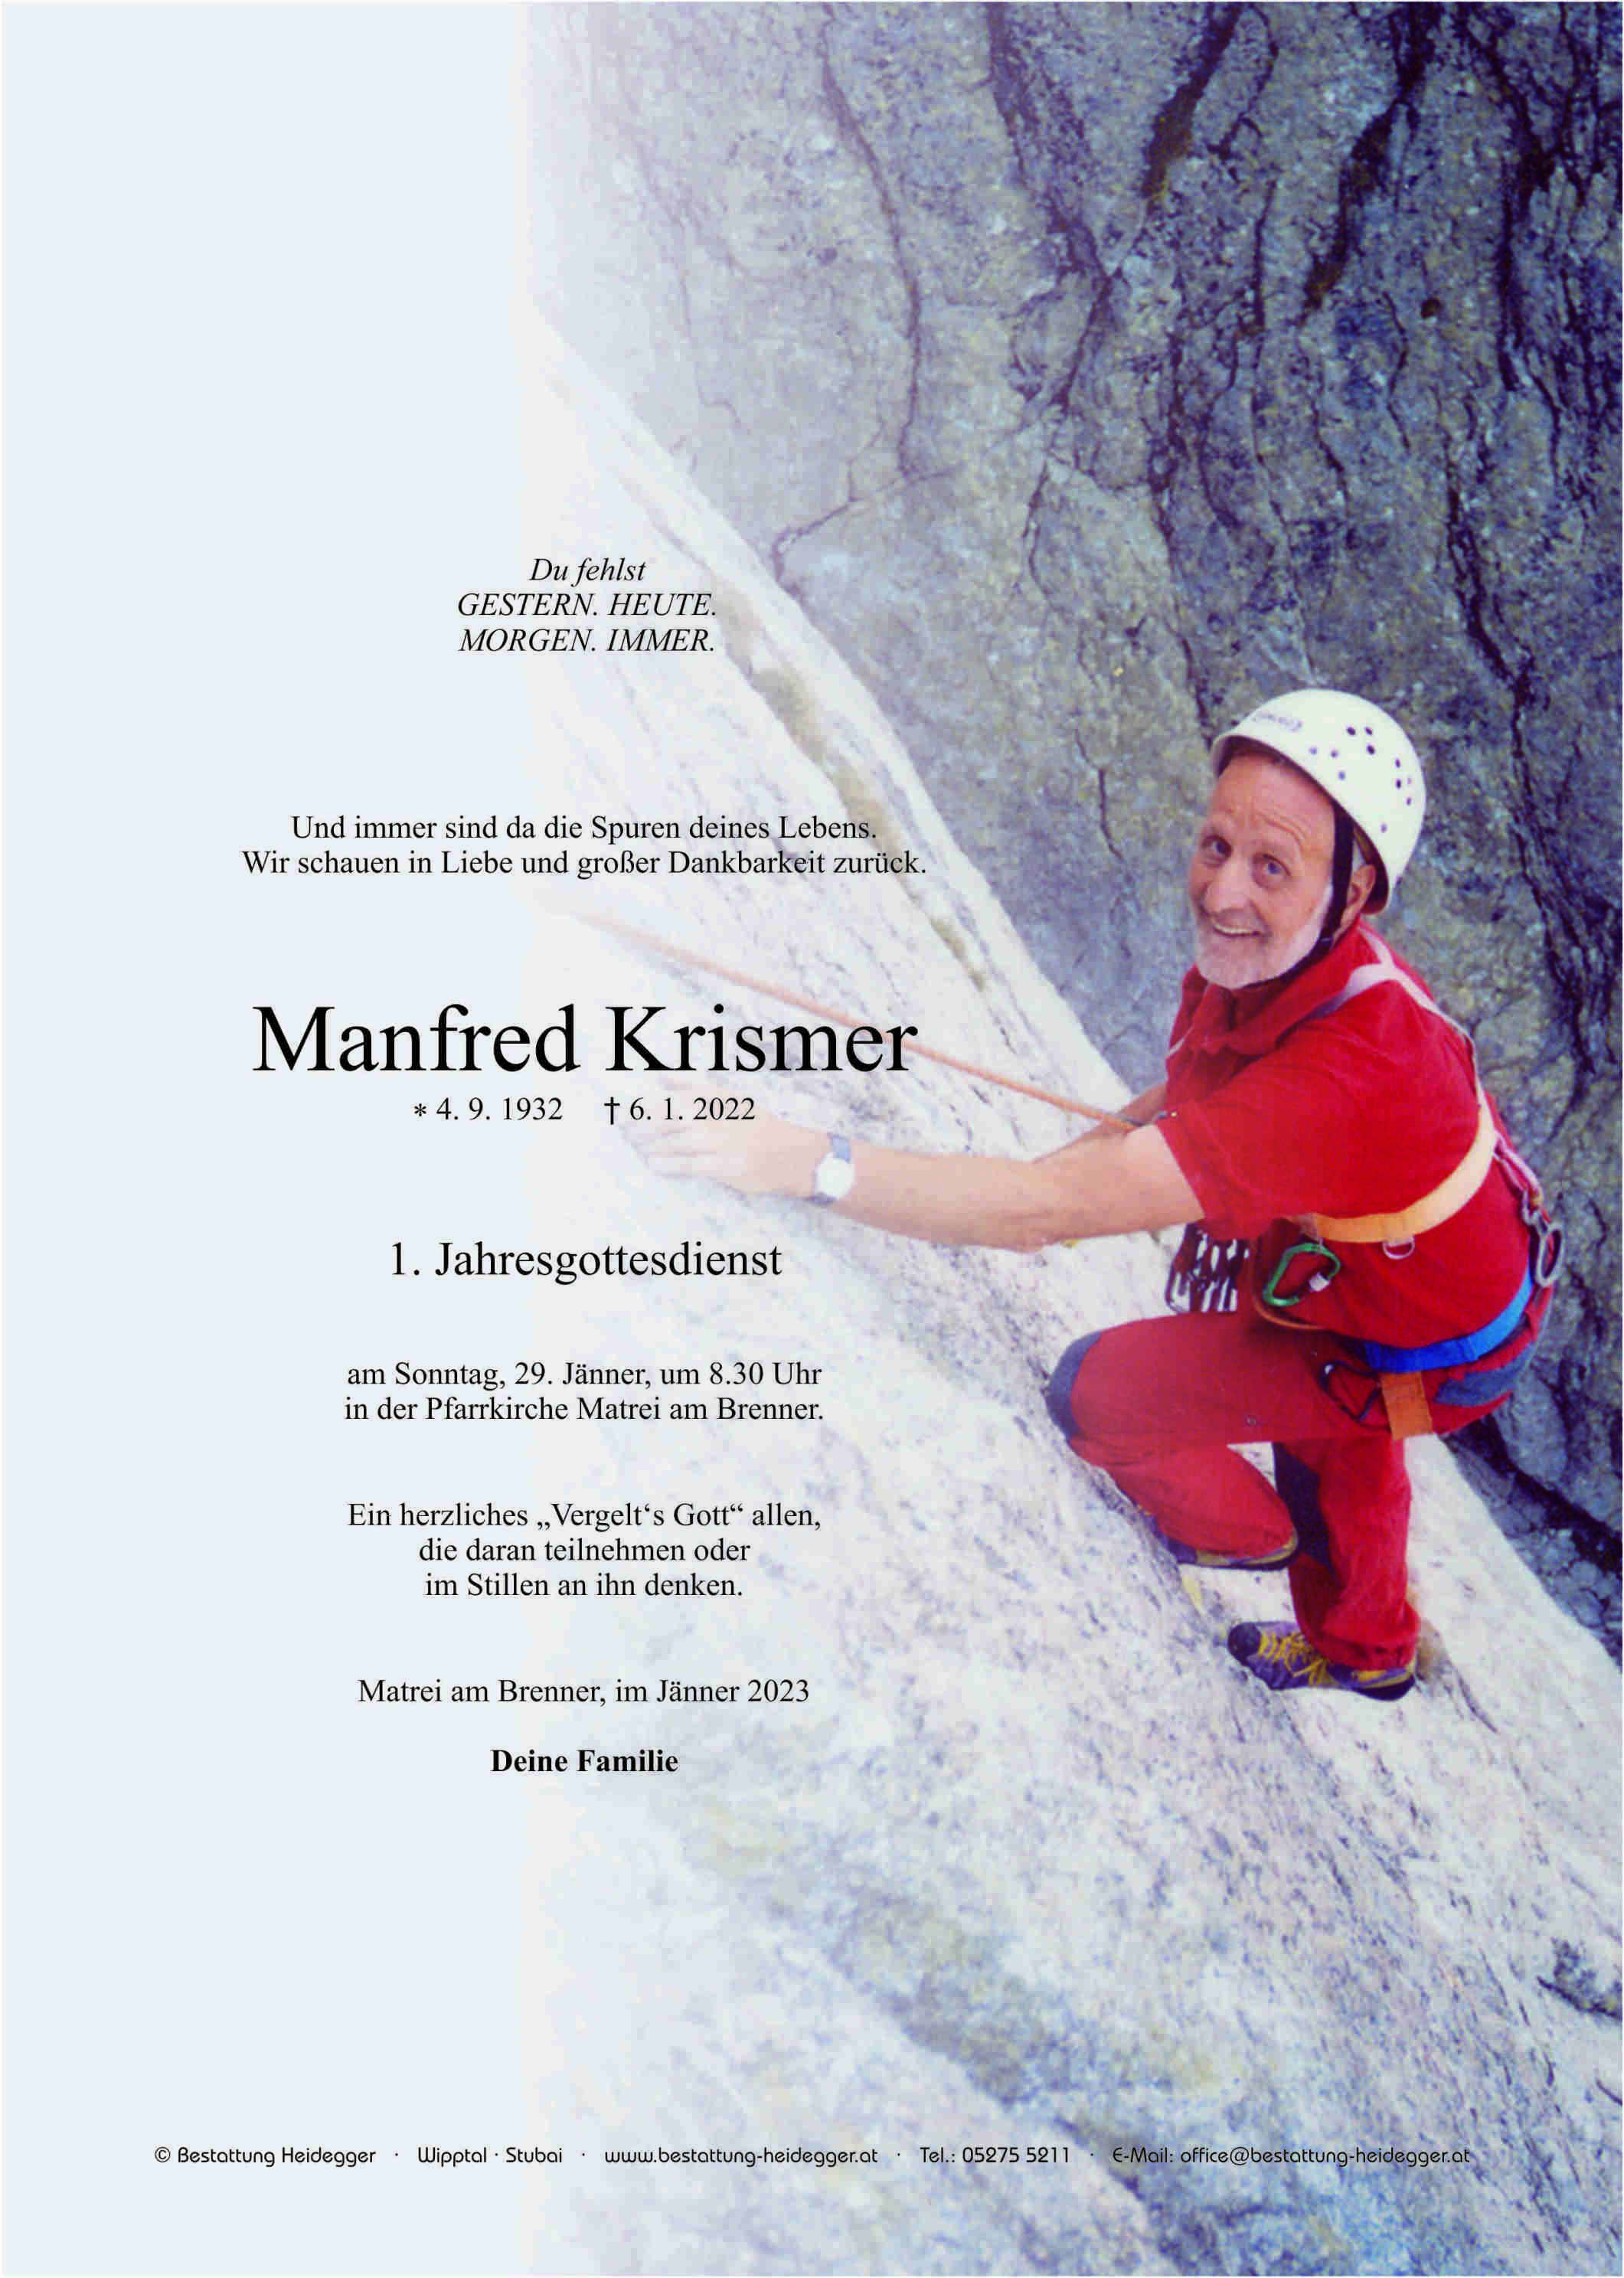 Manfred Krismer